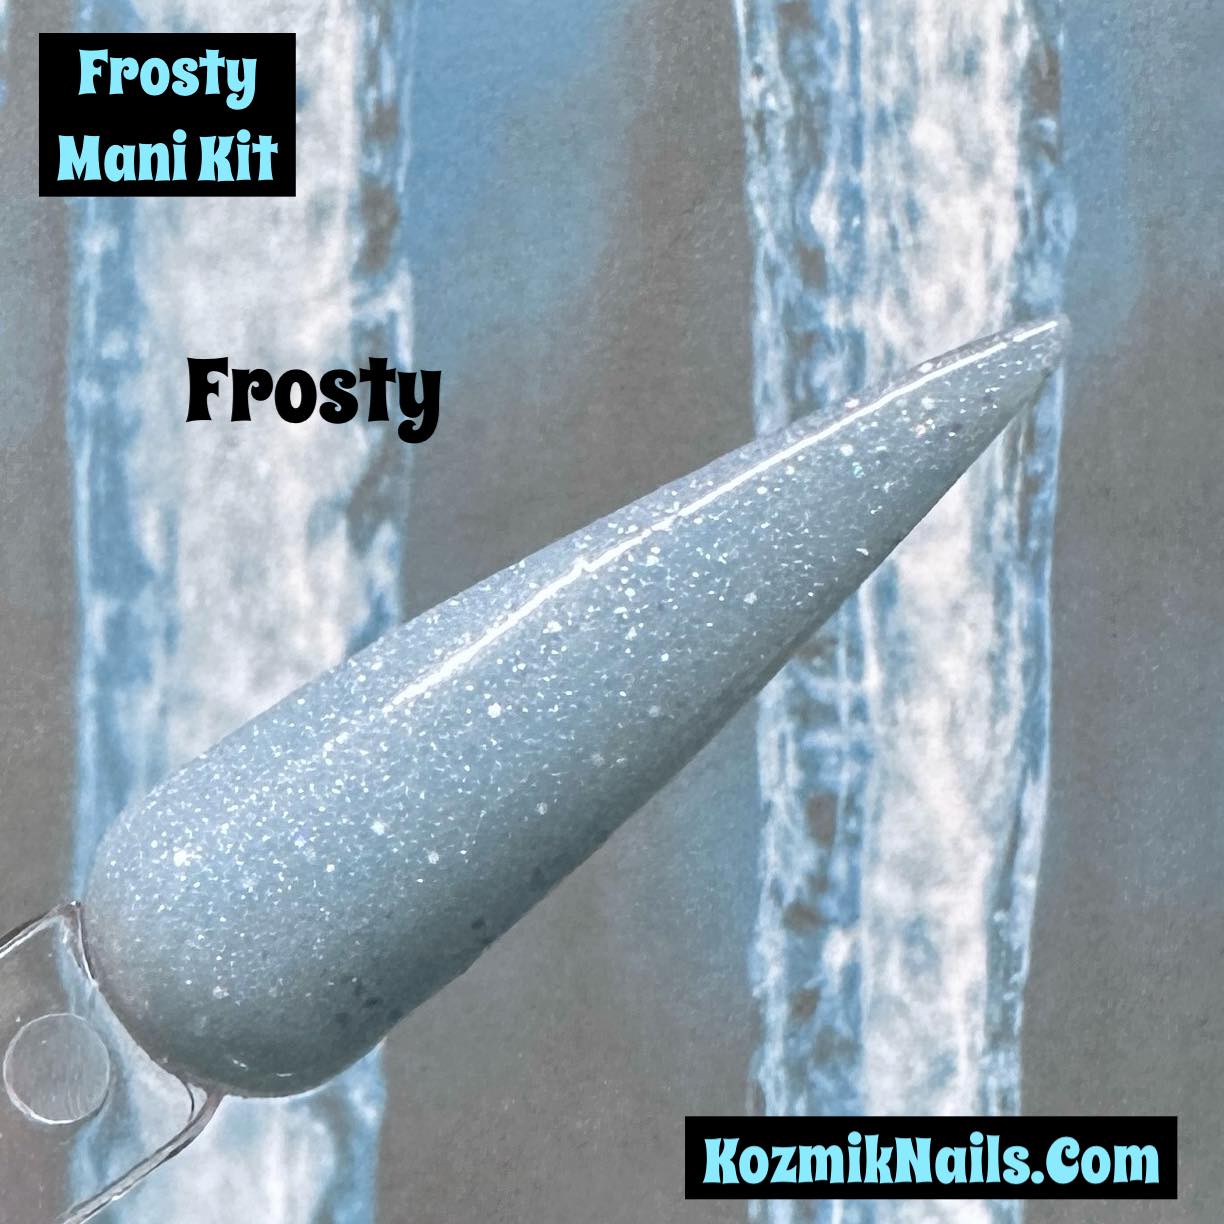 Frosty Mani Kit